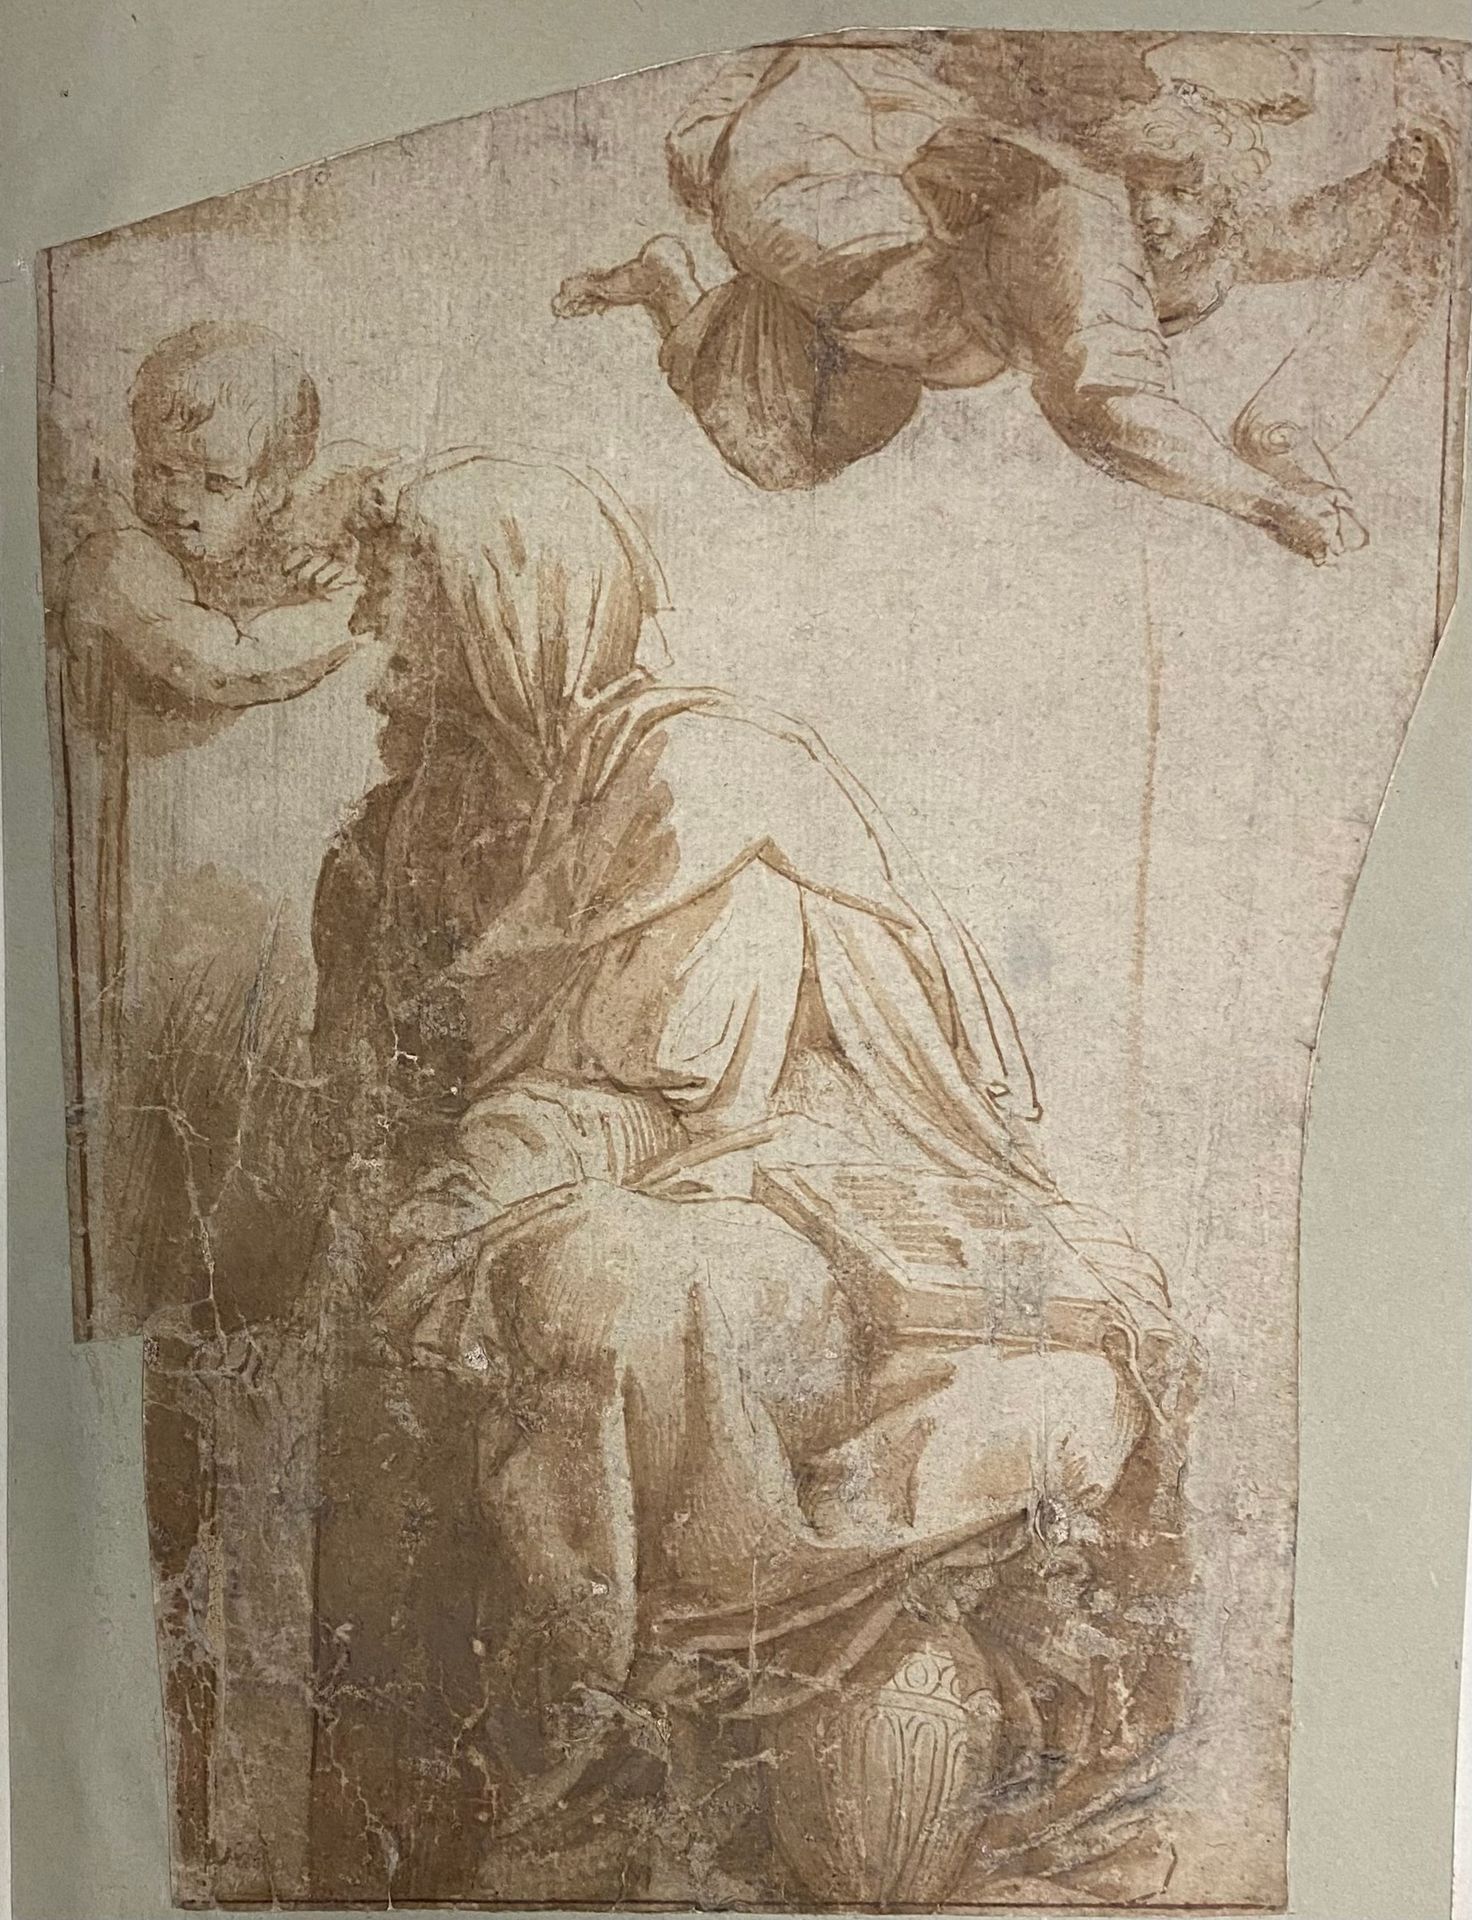 Null Scuola italiana del XVII secolo

Un profeta circondato da due angeli

Penna&hellip;